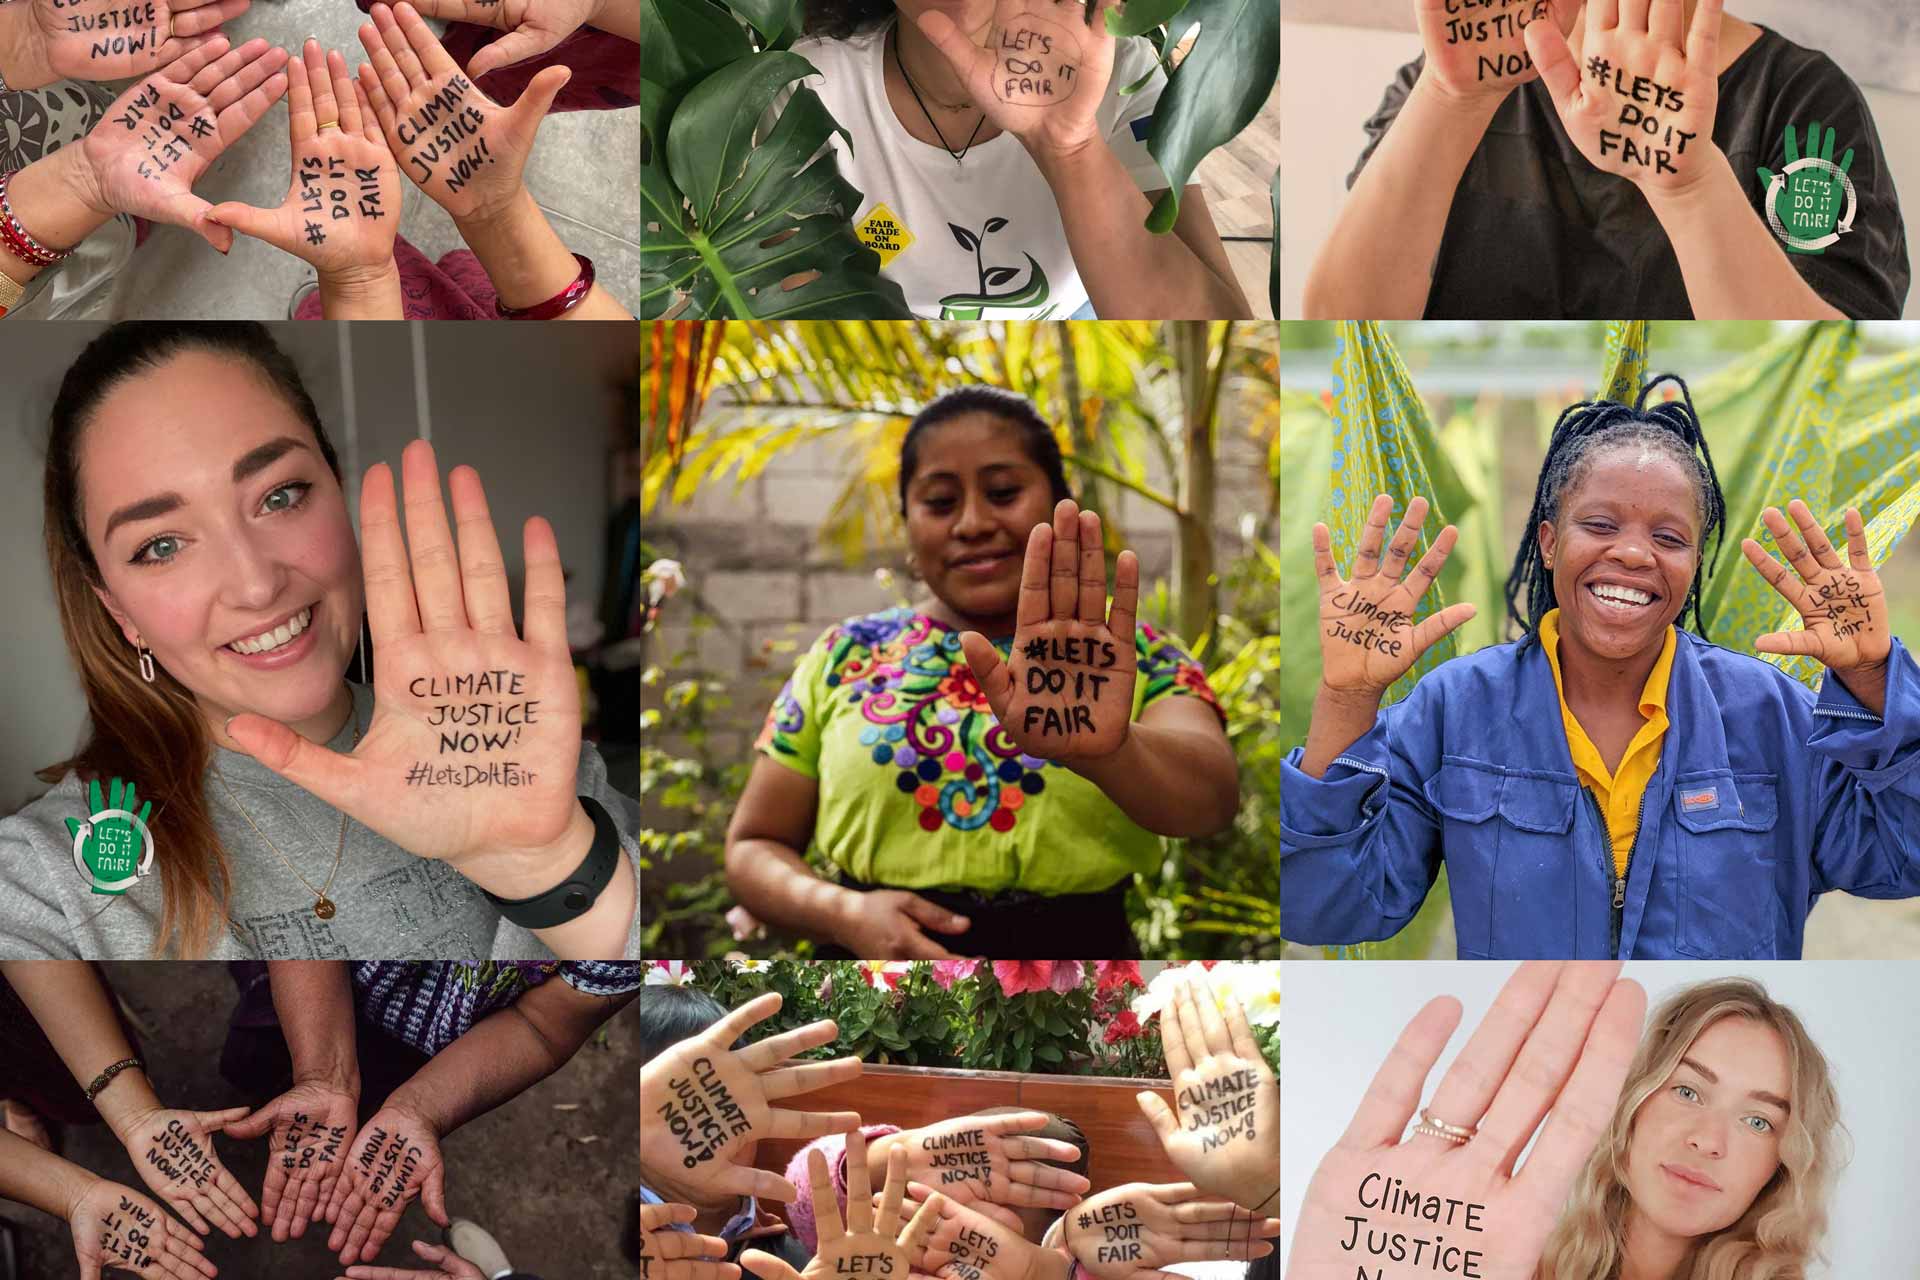 Kvinnor som visar händer med texten Climate Justice Now – Let's Do It Fair